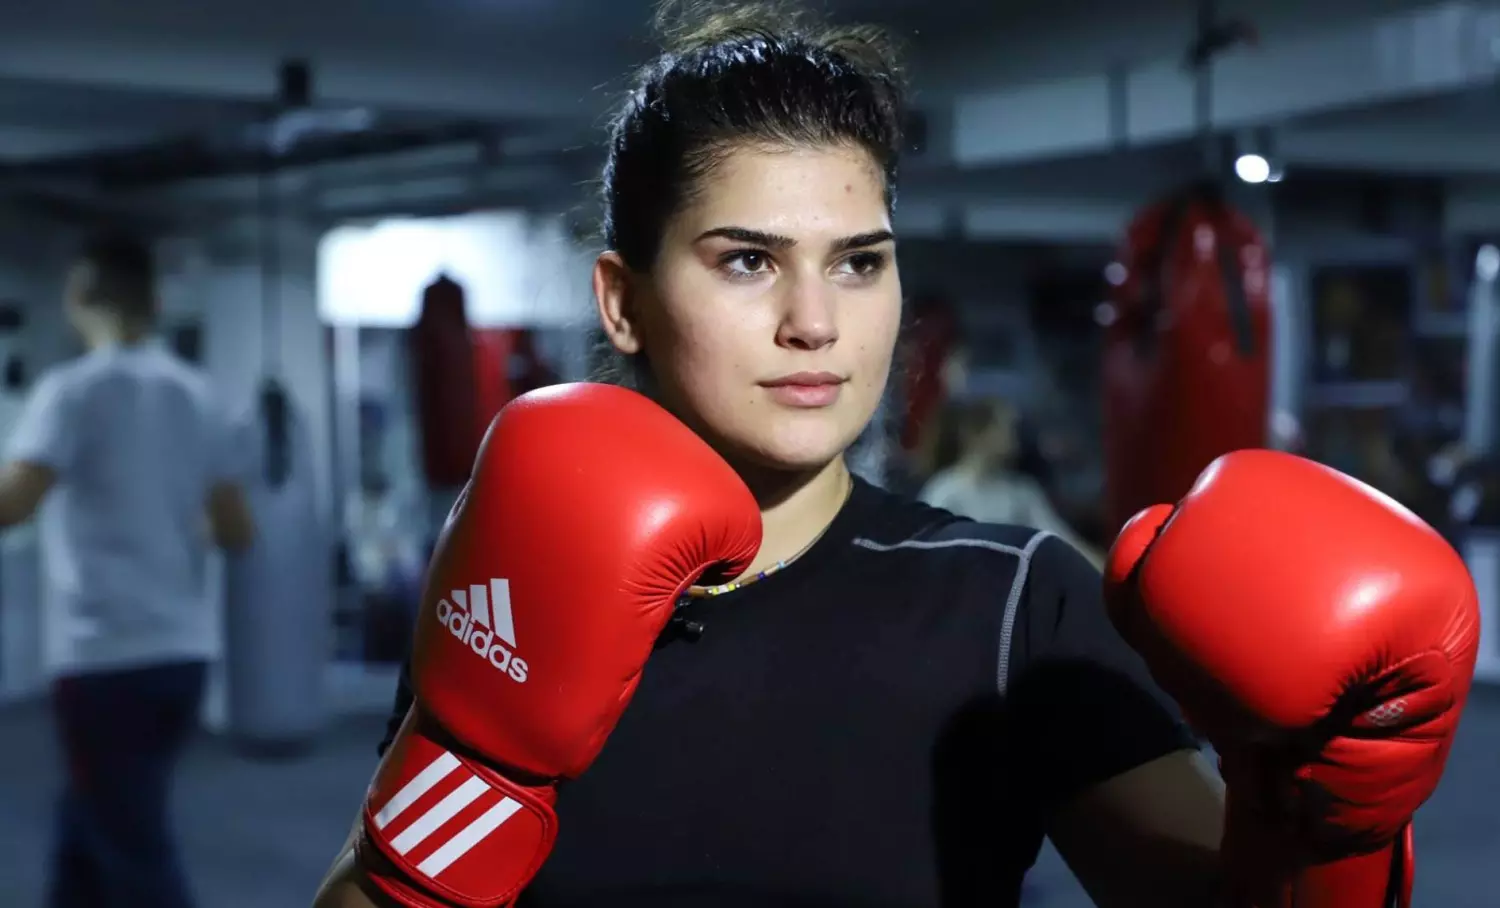 Kosovo boxer Donjeta Sadiku set to be denied India visa again